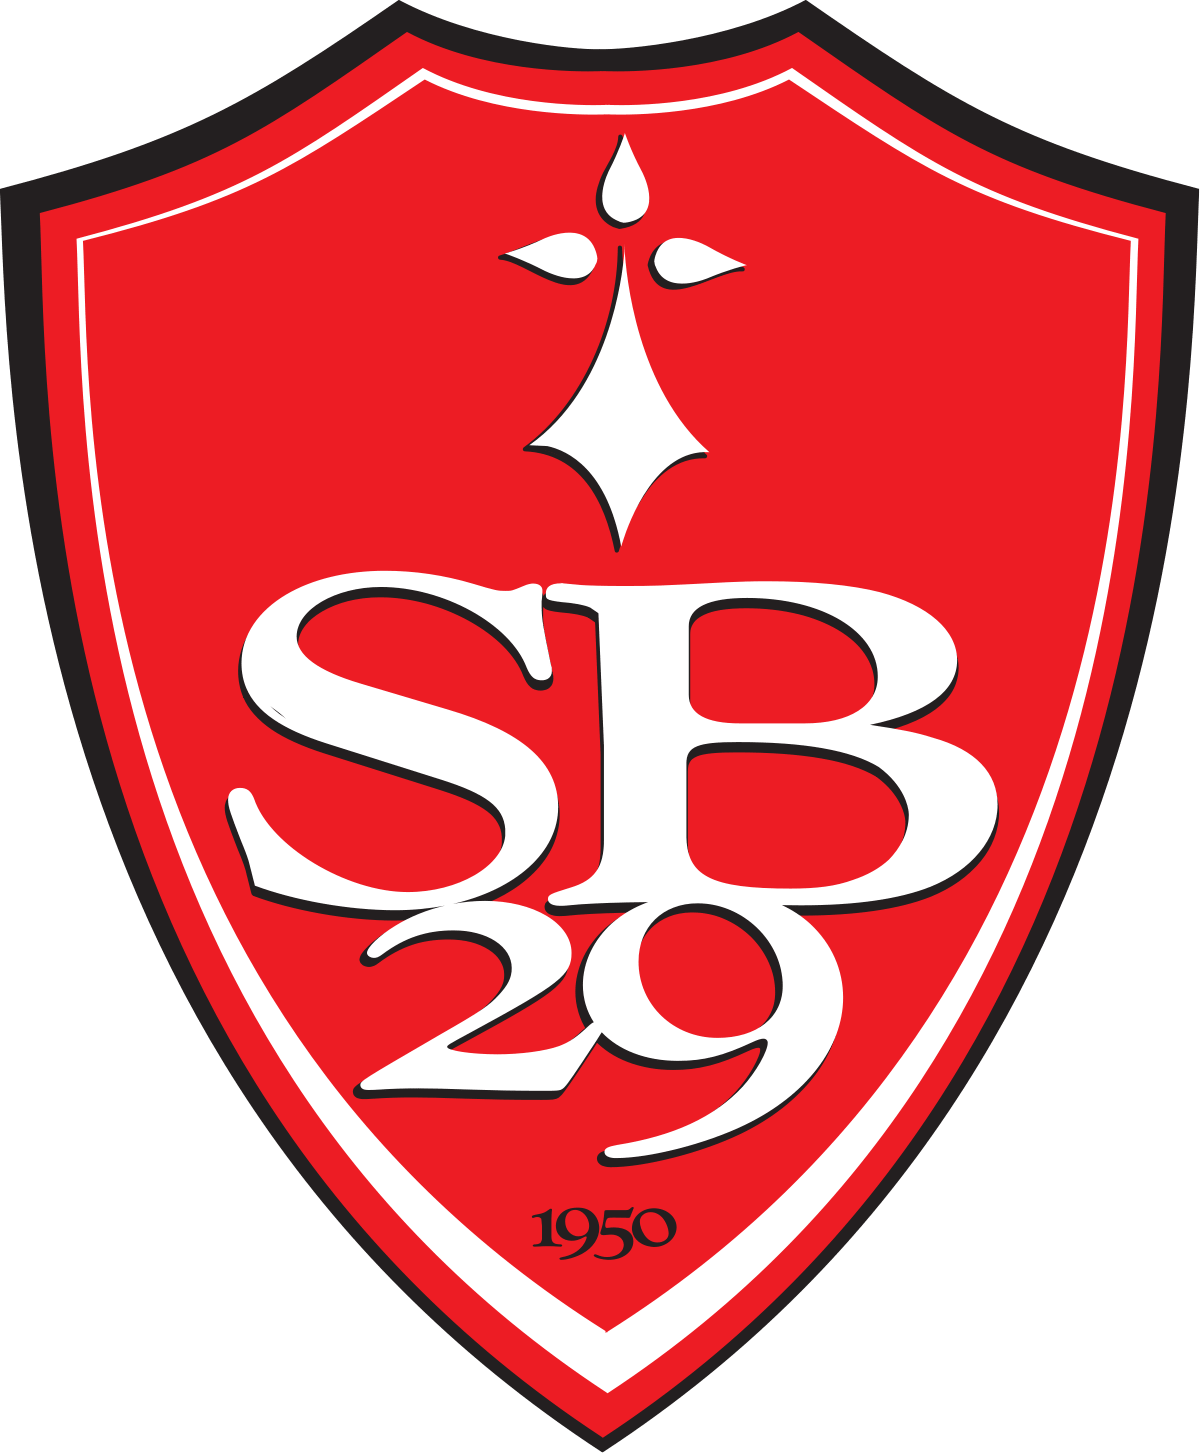 SB29